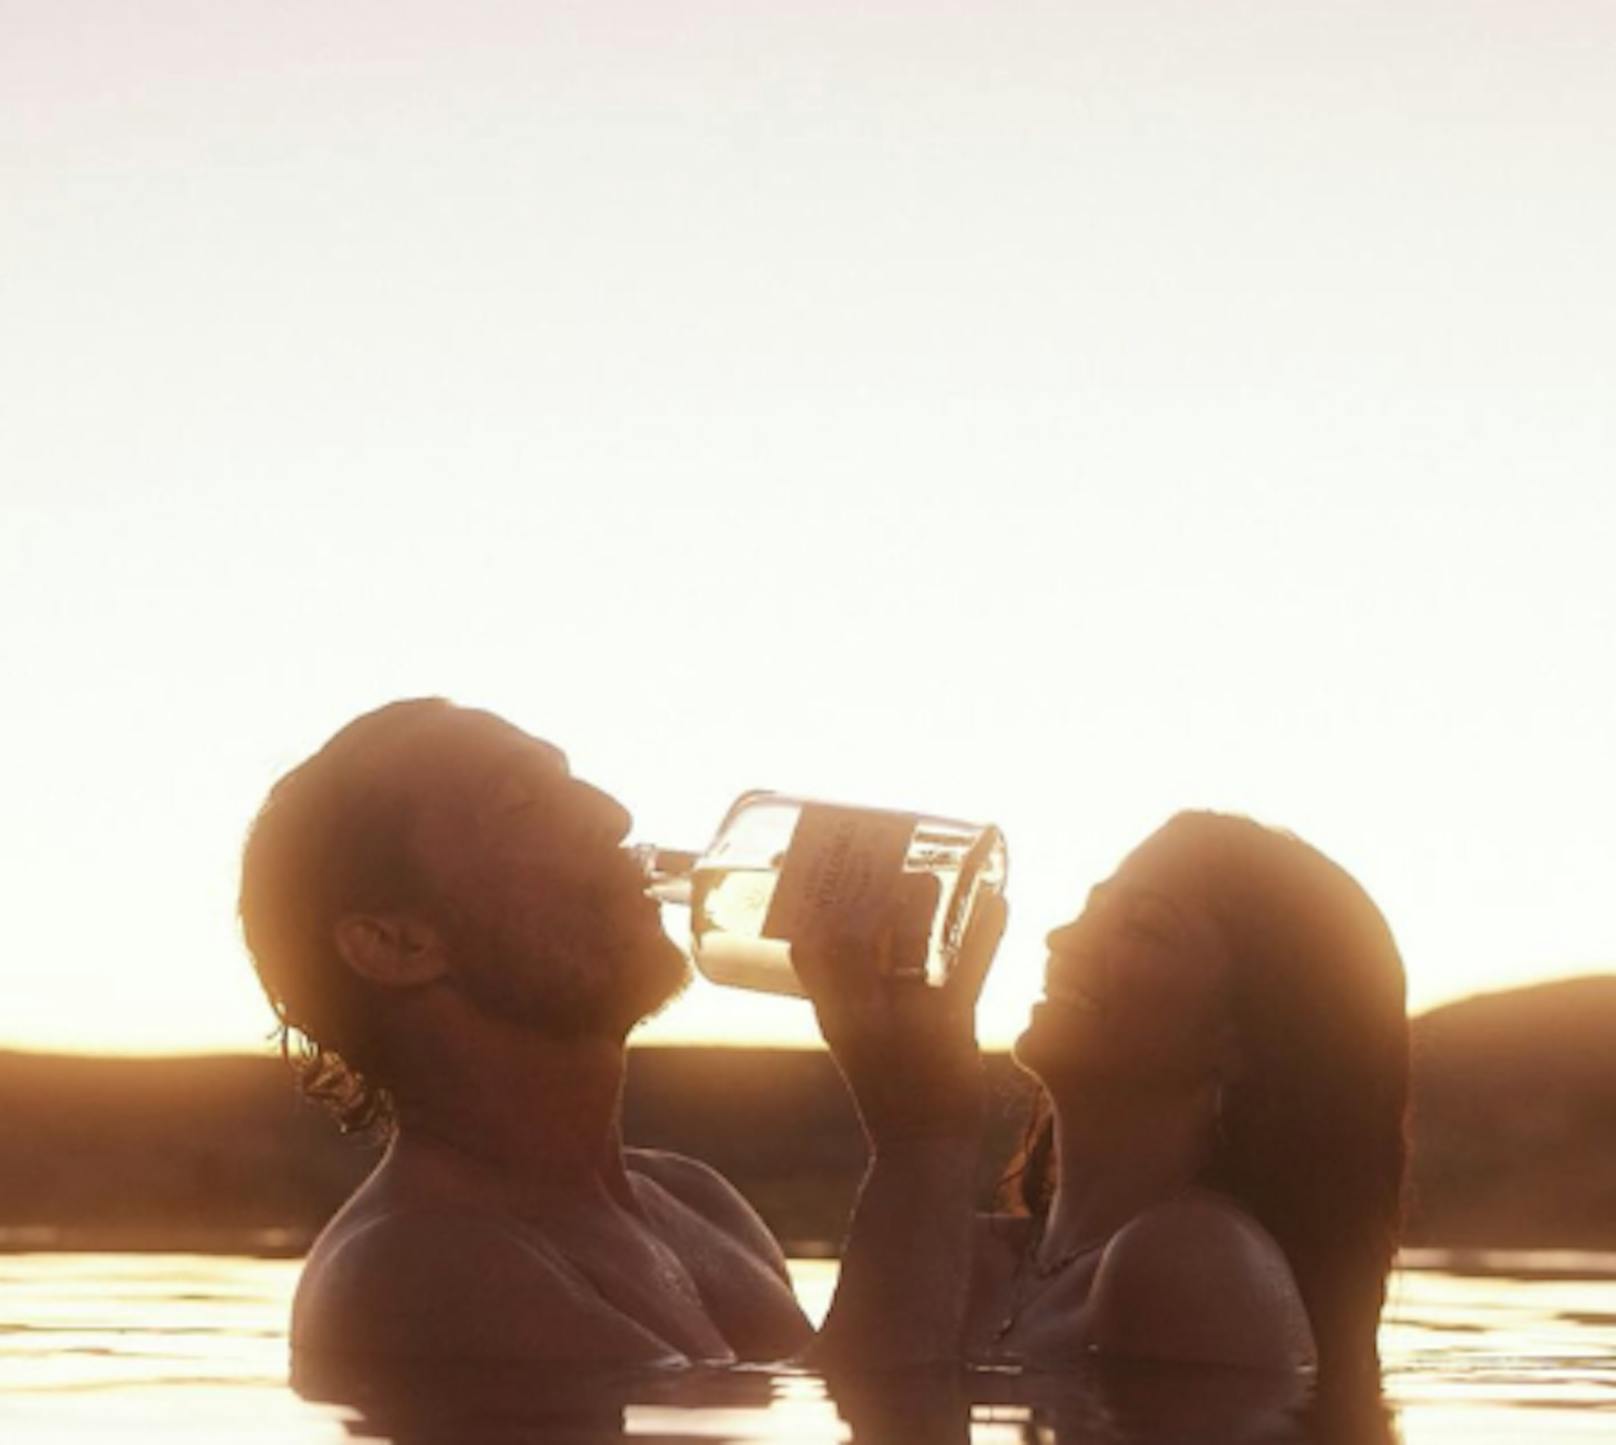 Matthew McConaughey genießt das Leben in vollen Zügen. Mit seiner Frau Camila schlürft er gut gelaunt Tequila im Wasser.